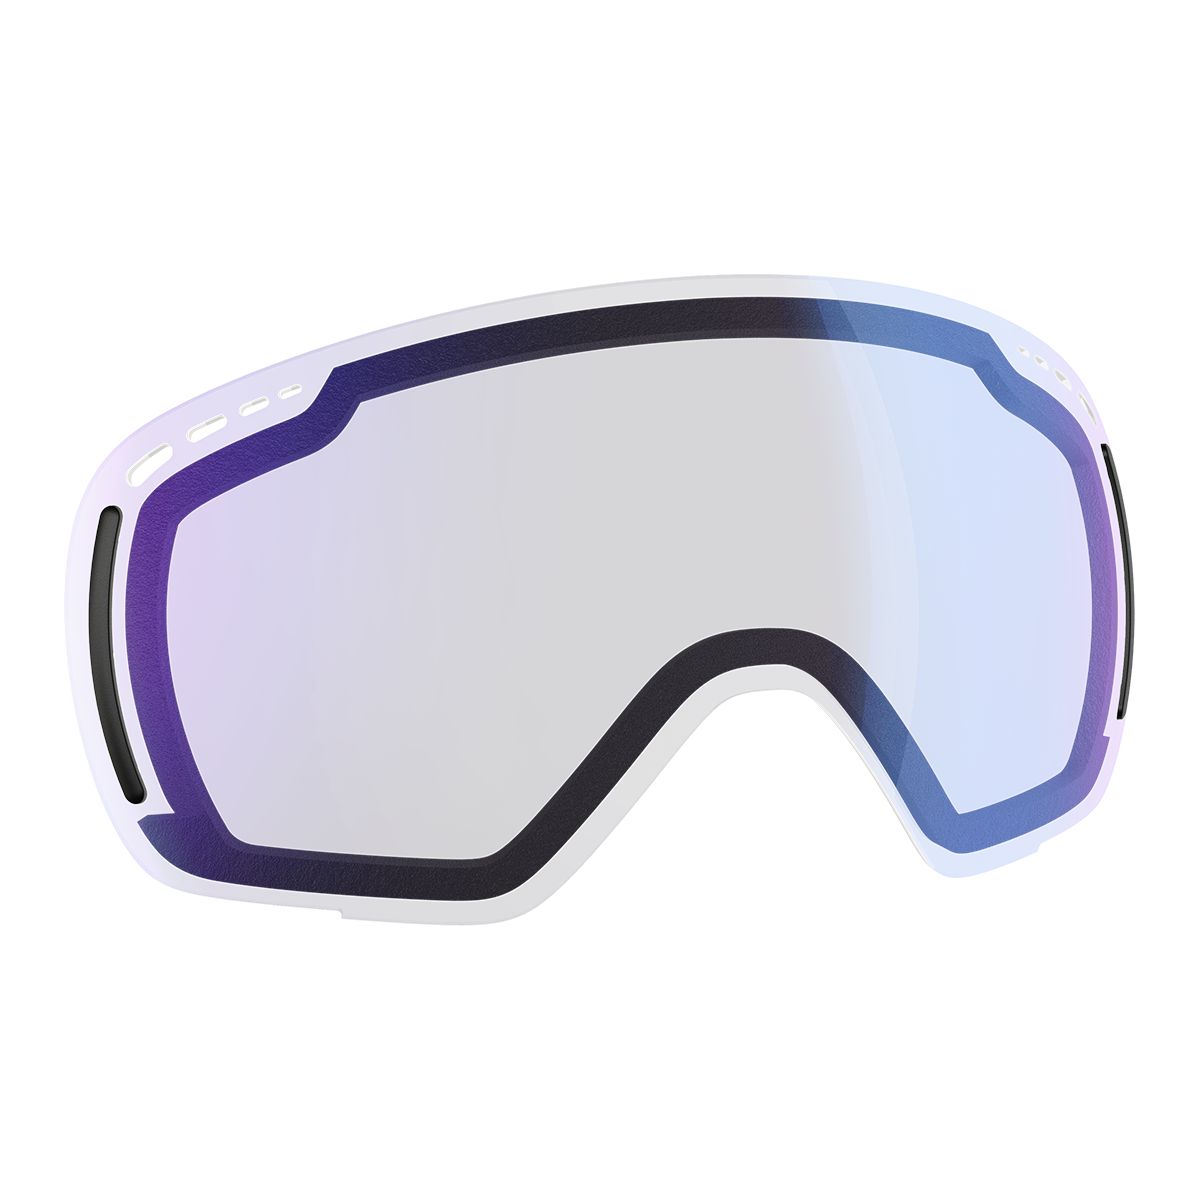 Scott LCG Compact Ski & Snowboard Goggles 2021/22 Team Red with Enhancer Aqua Chrome Lens + Bonus Lens